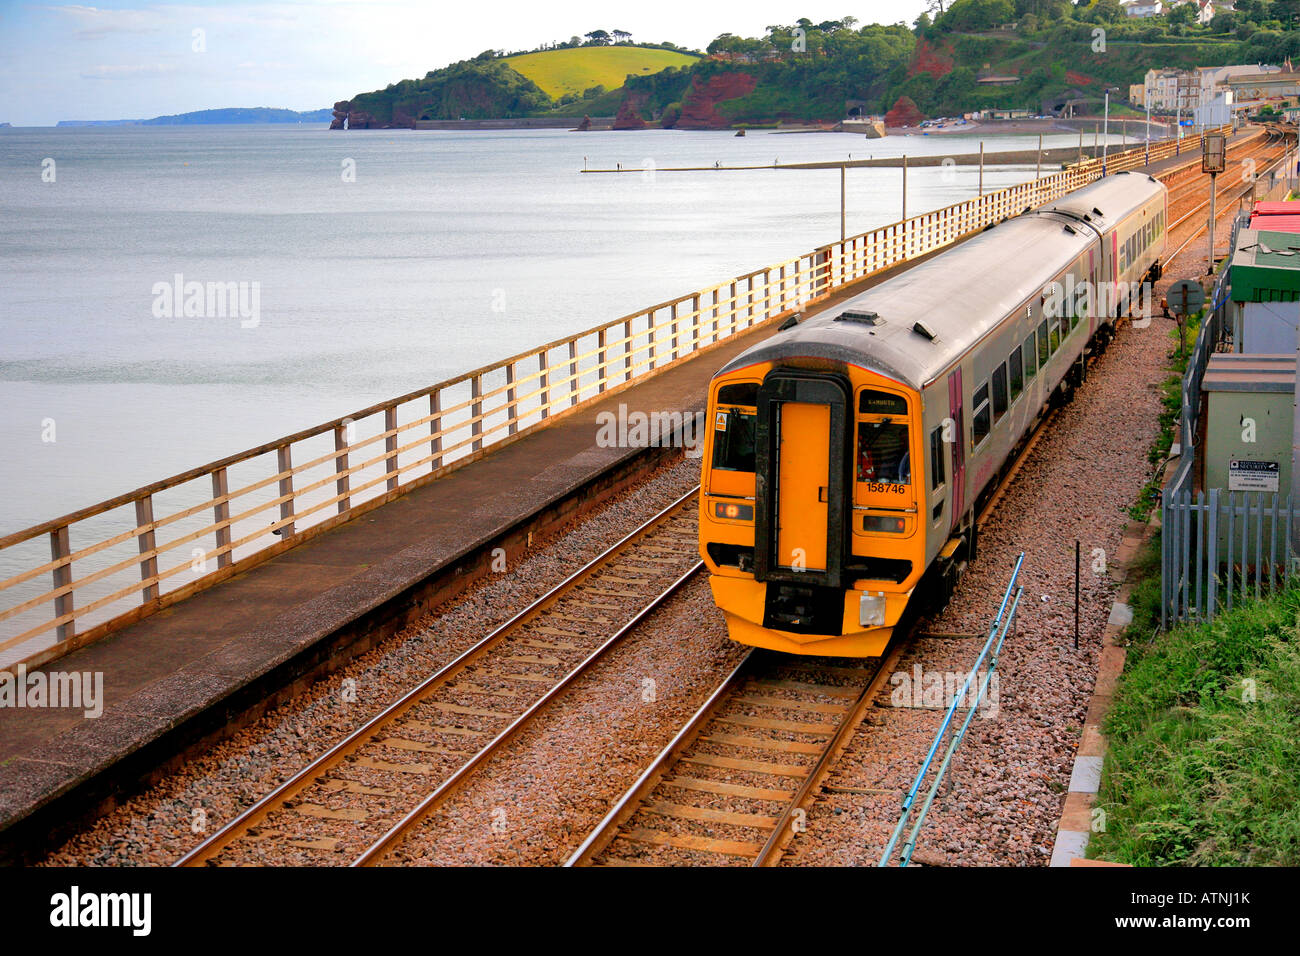 158746 Alphaline treno Dawlish Seawall a Exmouth dalla stazione a Dawlish Devon England Regno Unito Foto Stock